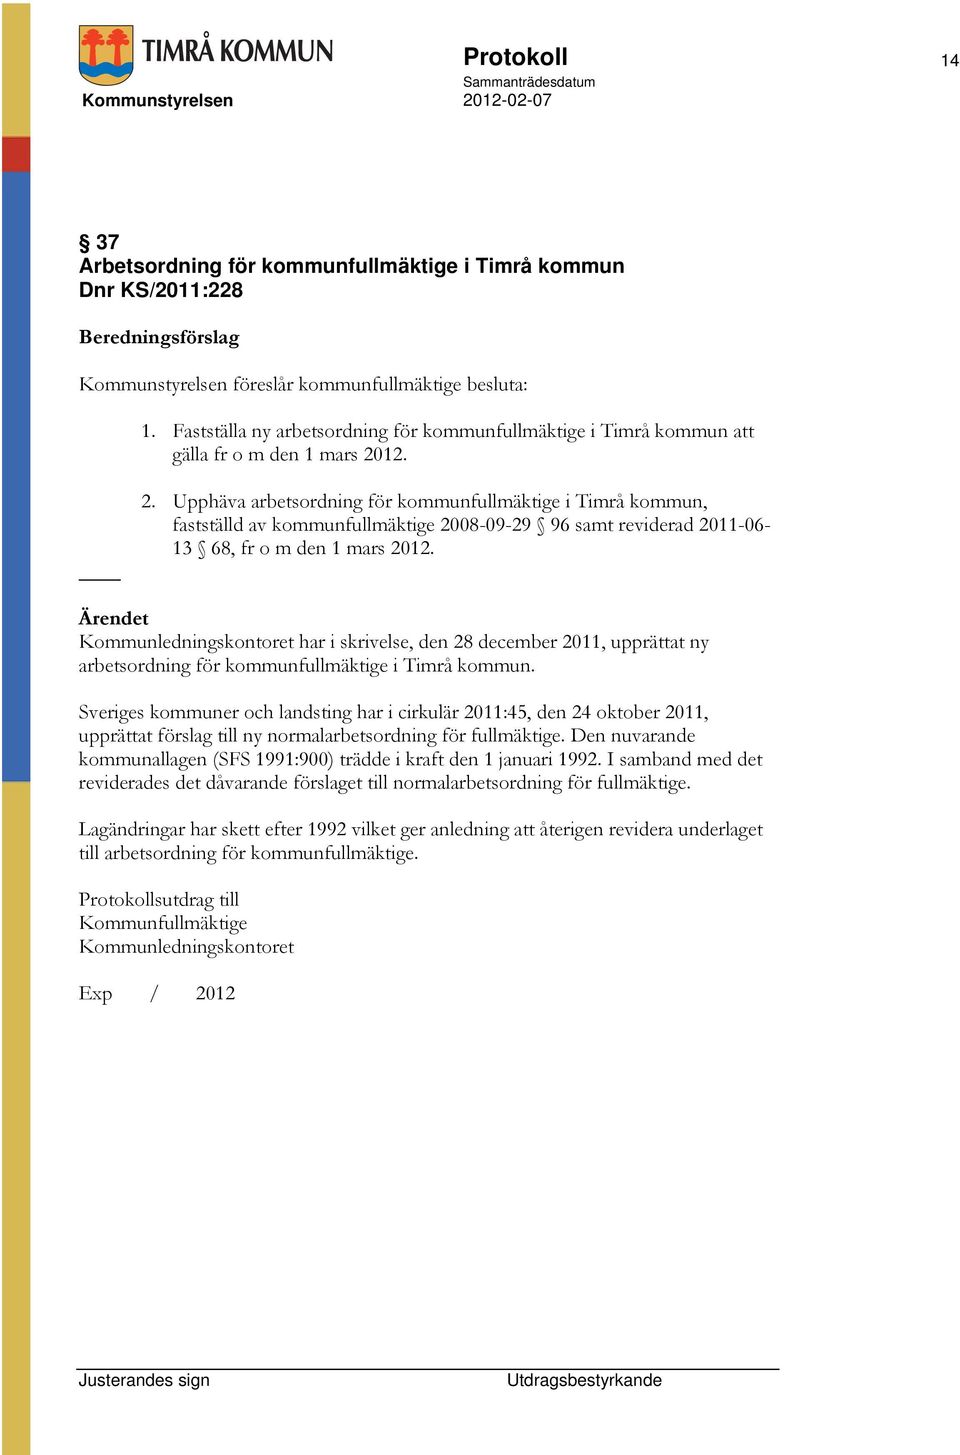 12. 2. Upphäva arbetsordning för kommunfullmäktige i Timrå kommun, fastställd av kommunfullmäktige 2008-09-29 96 samt reviderad 2011-06- 13 68, fr o m den 1 mars 2012.